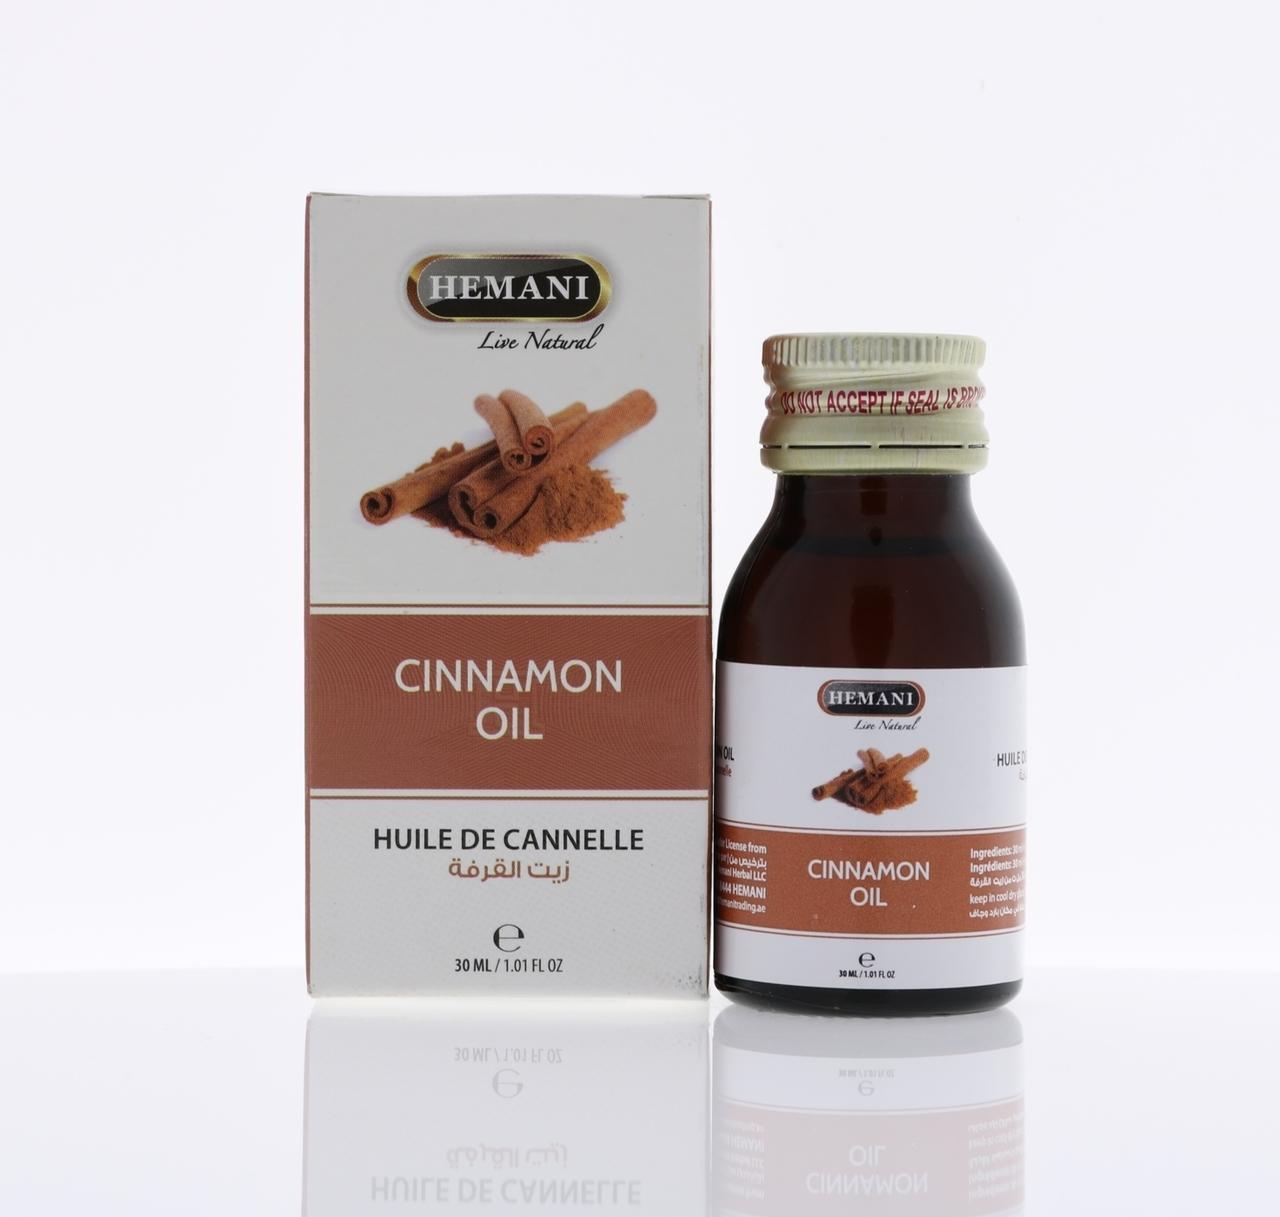 Hemani Cinnamon Oil